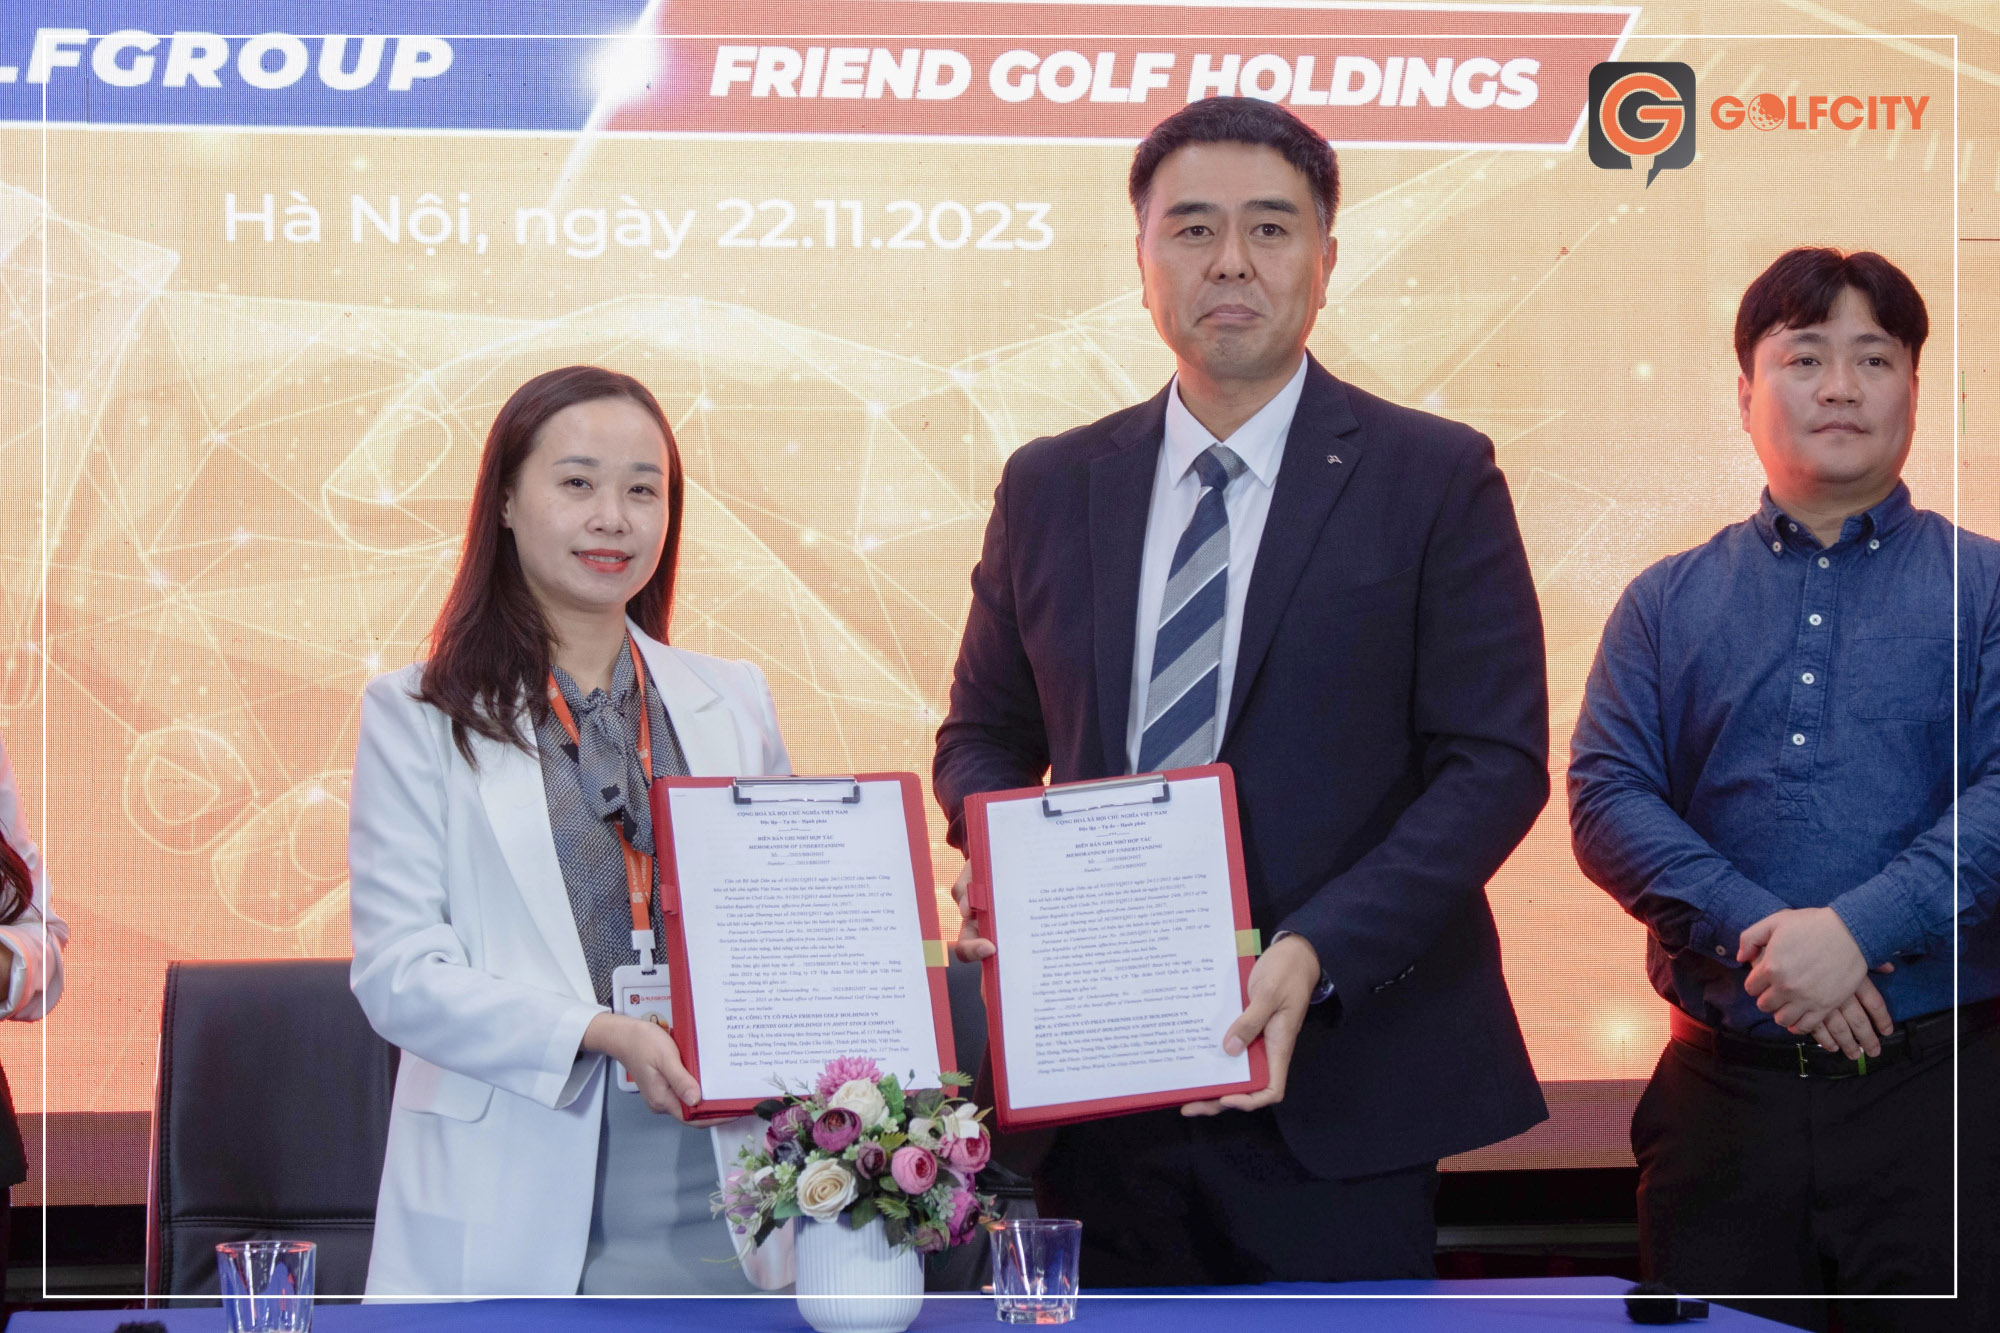 P.TGĐ GolfGroup và đại diện Friends Golf Holdings ký kết biên bản hợp tác